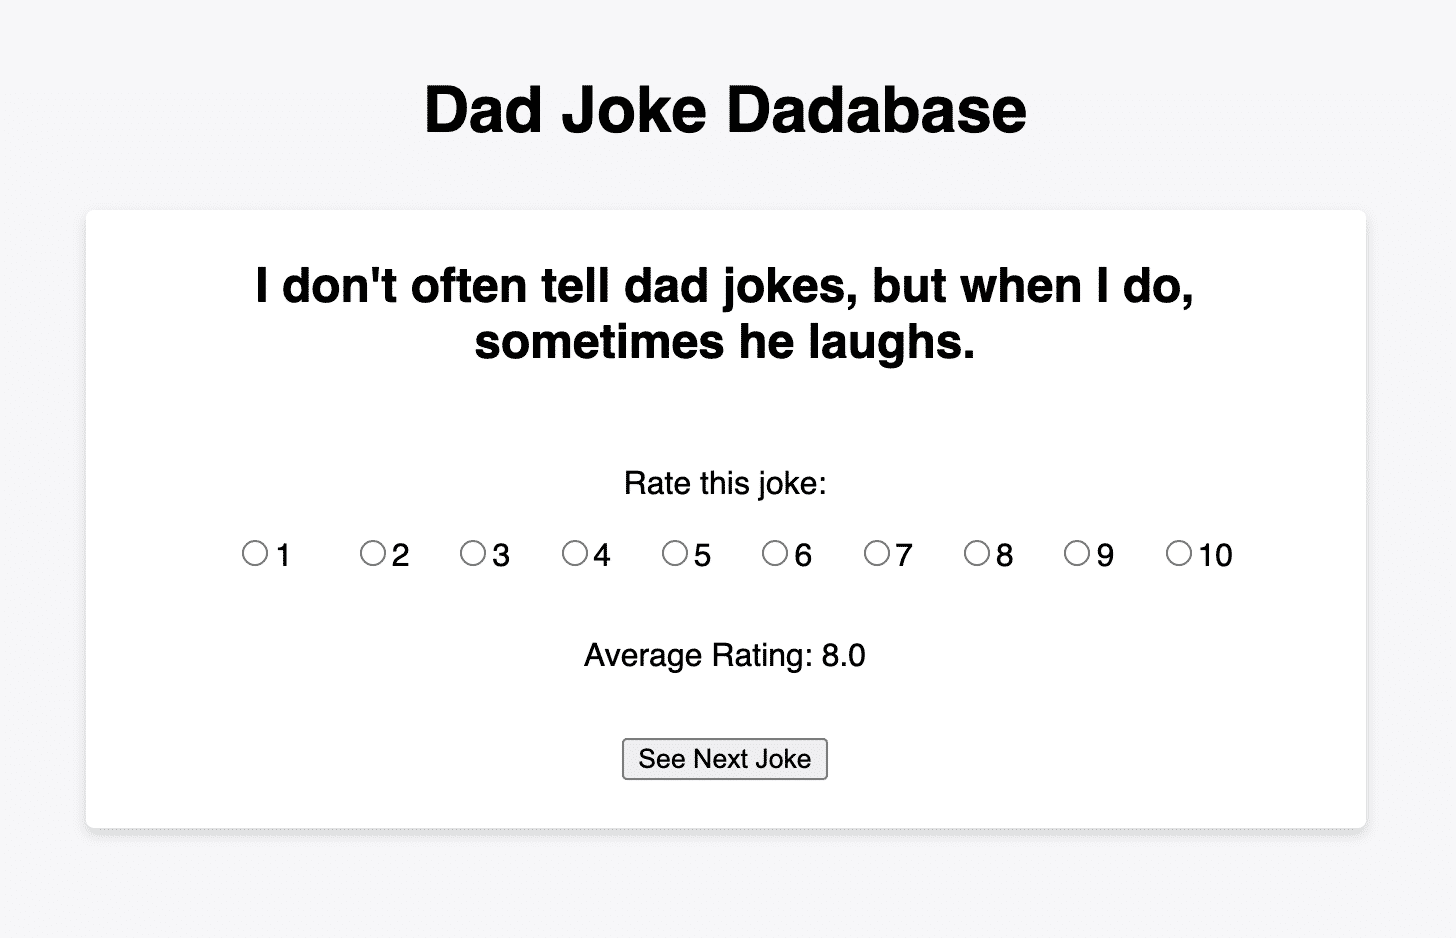 Dad joke “dadabase” app